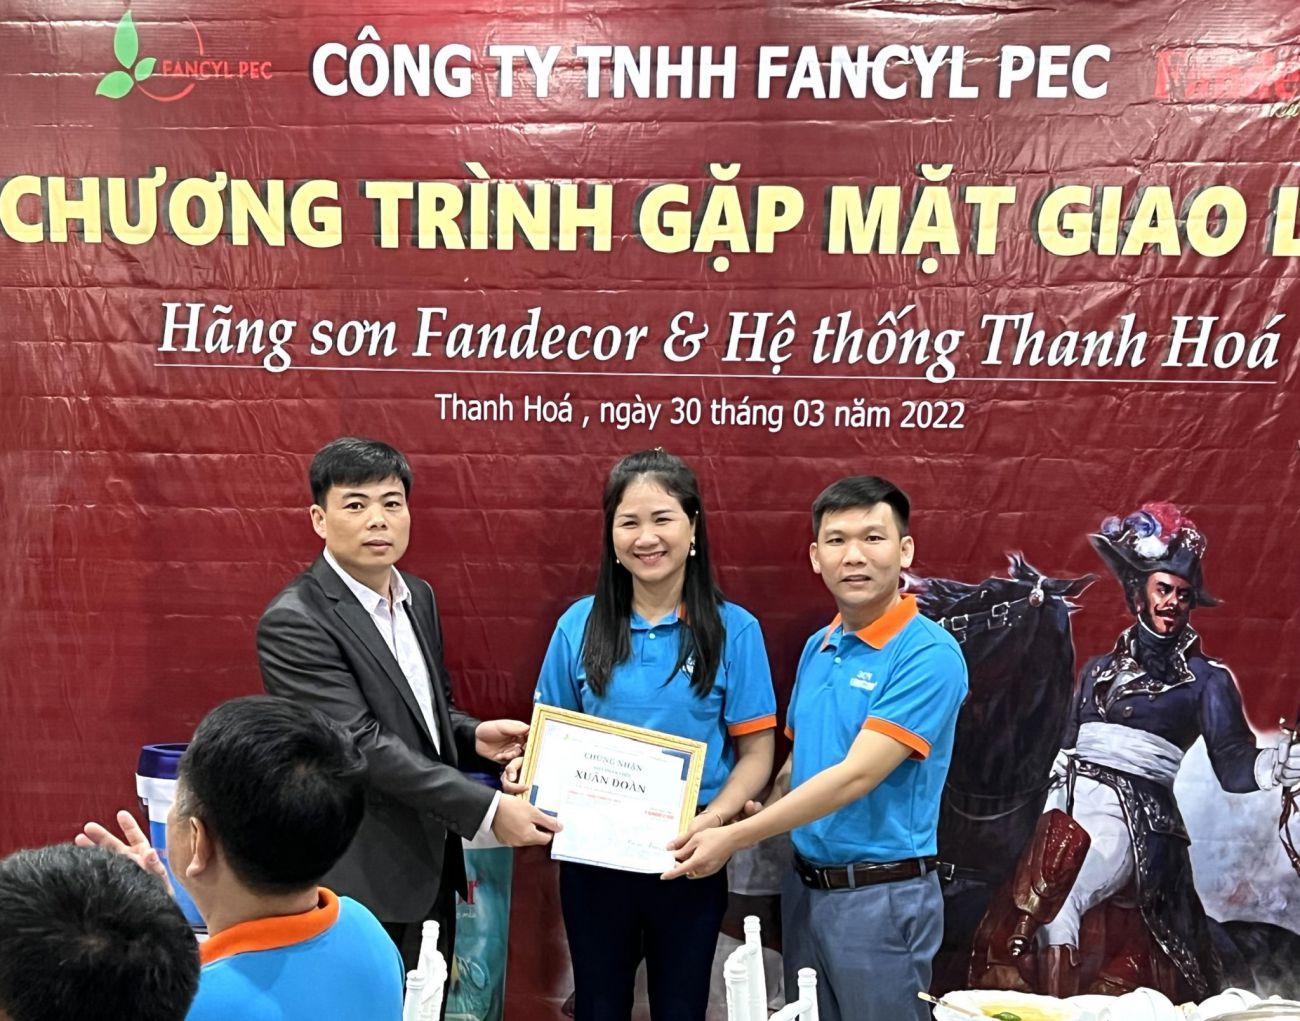 Sơn Fandecor & Hệ thống Thanh Hoá